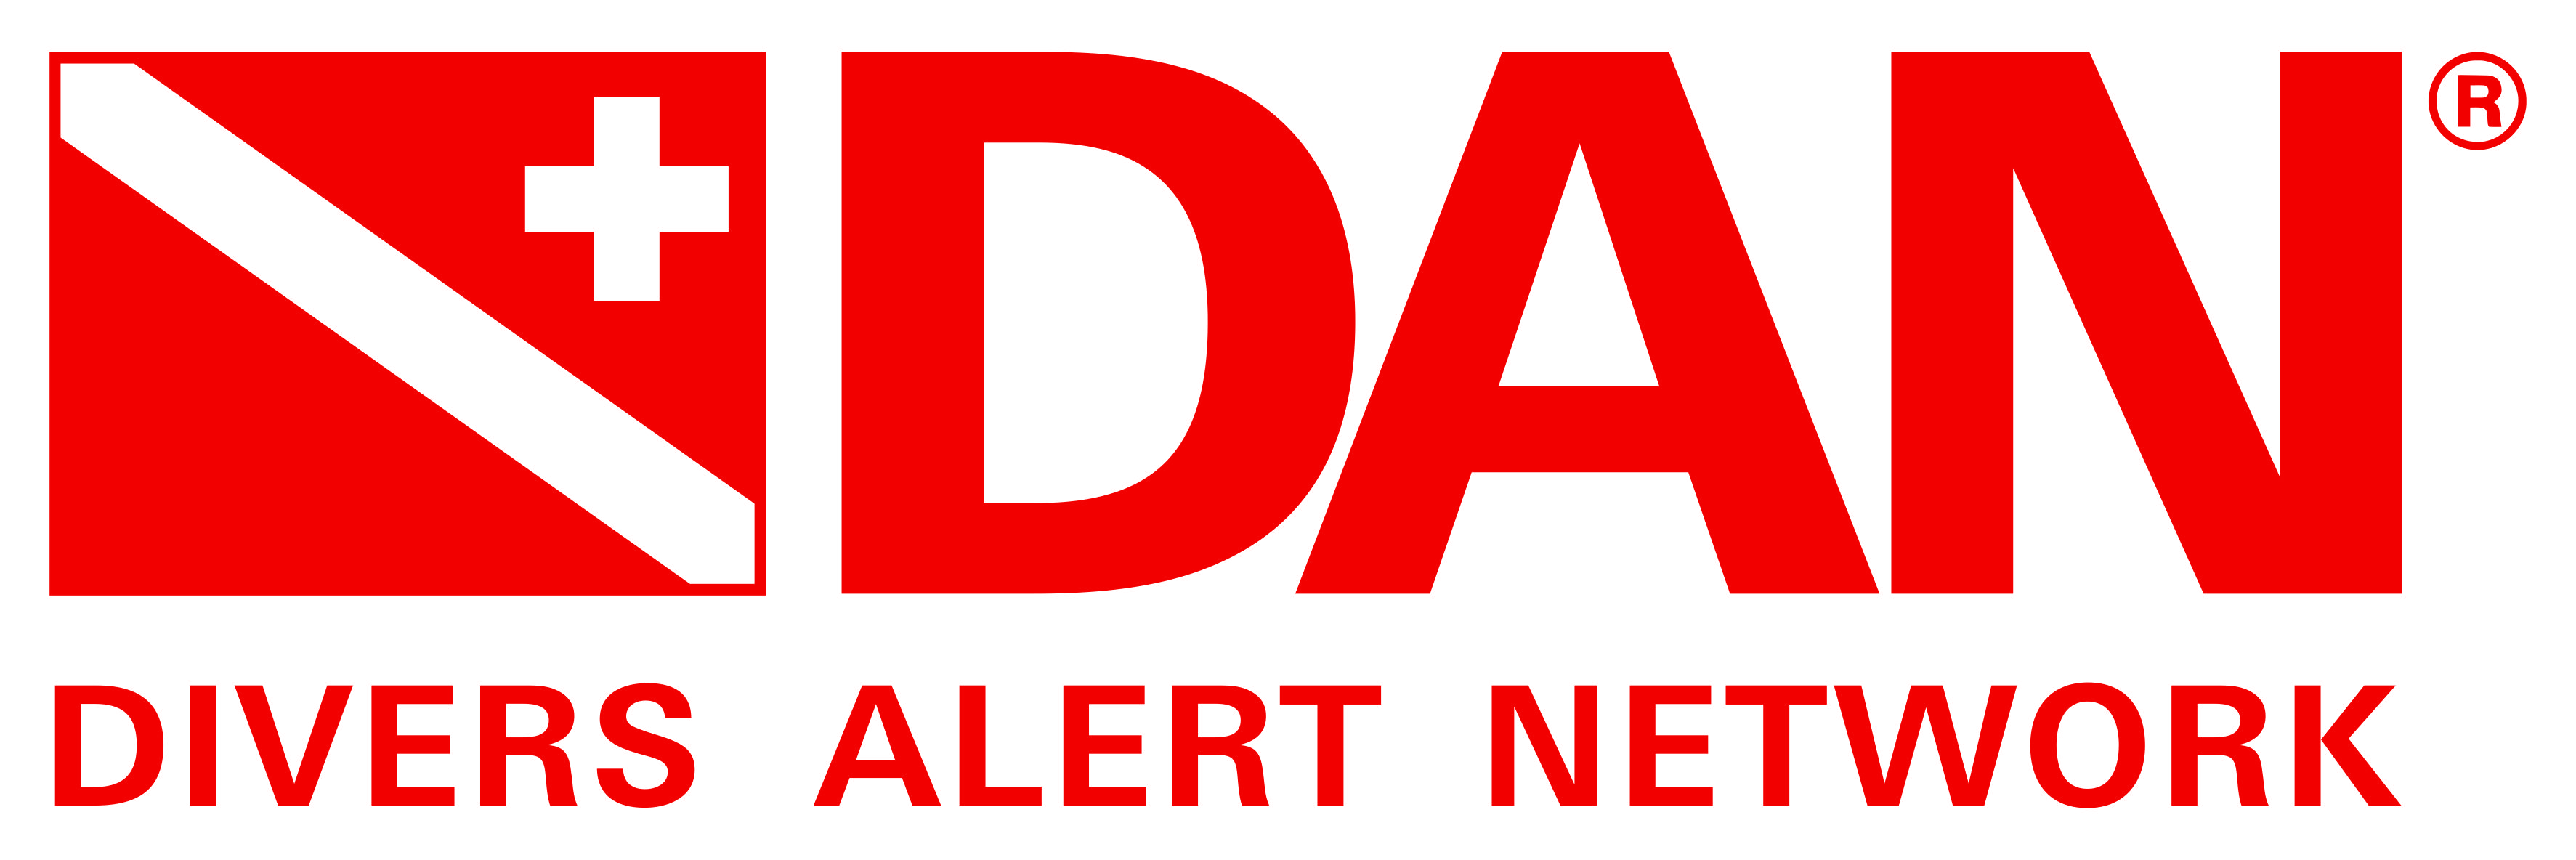 Diver Alert Network logo